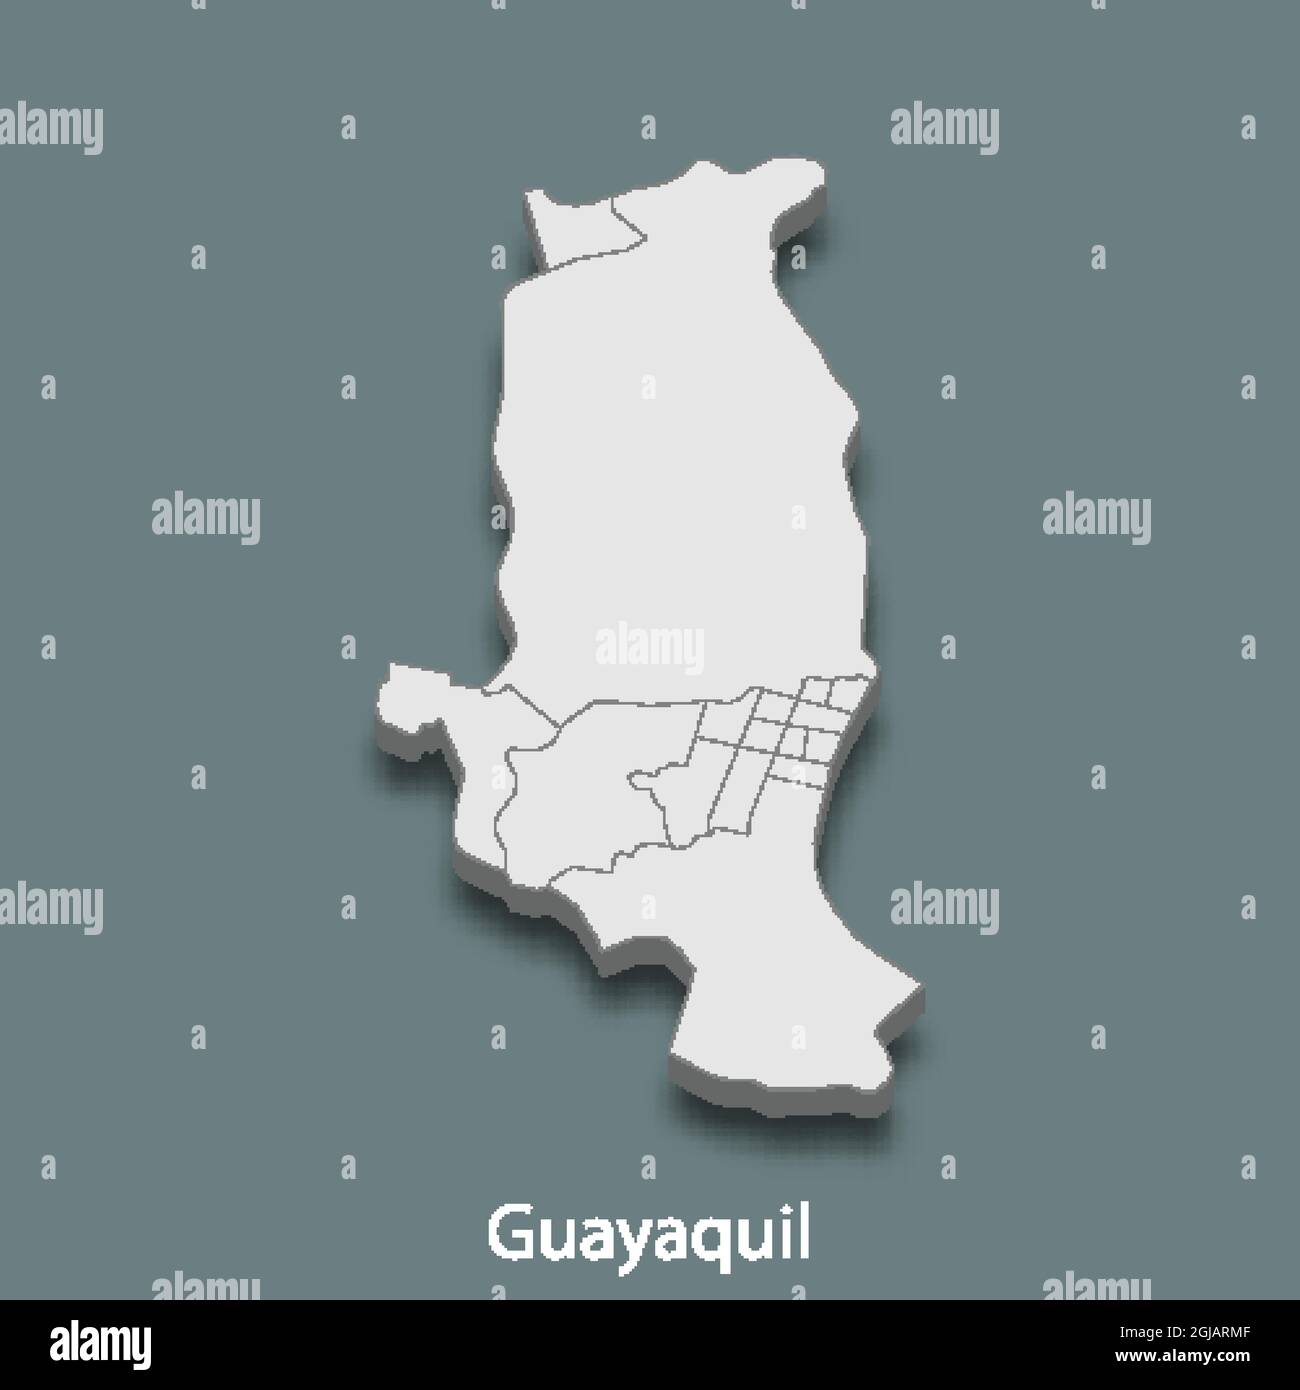 D Mapa Isom Trico De Guayaquil Es Una Ciudad De Ecuador Ilustraci N Vectorial Imagen Vector De